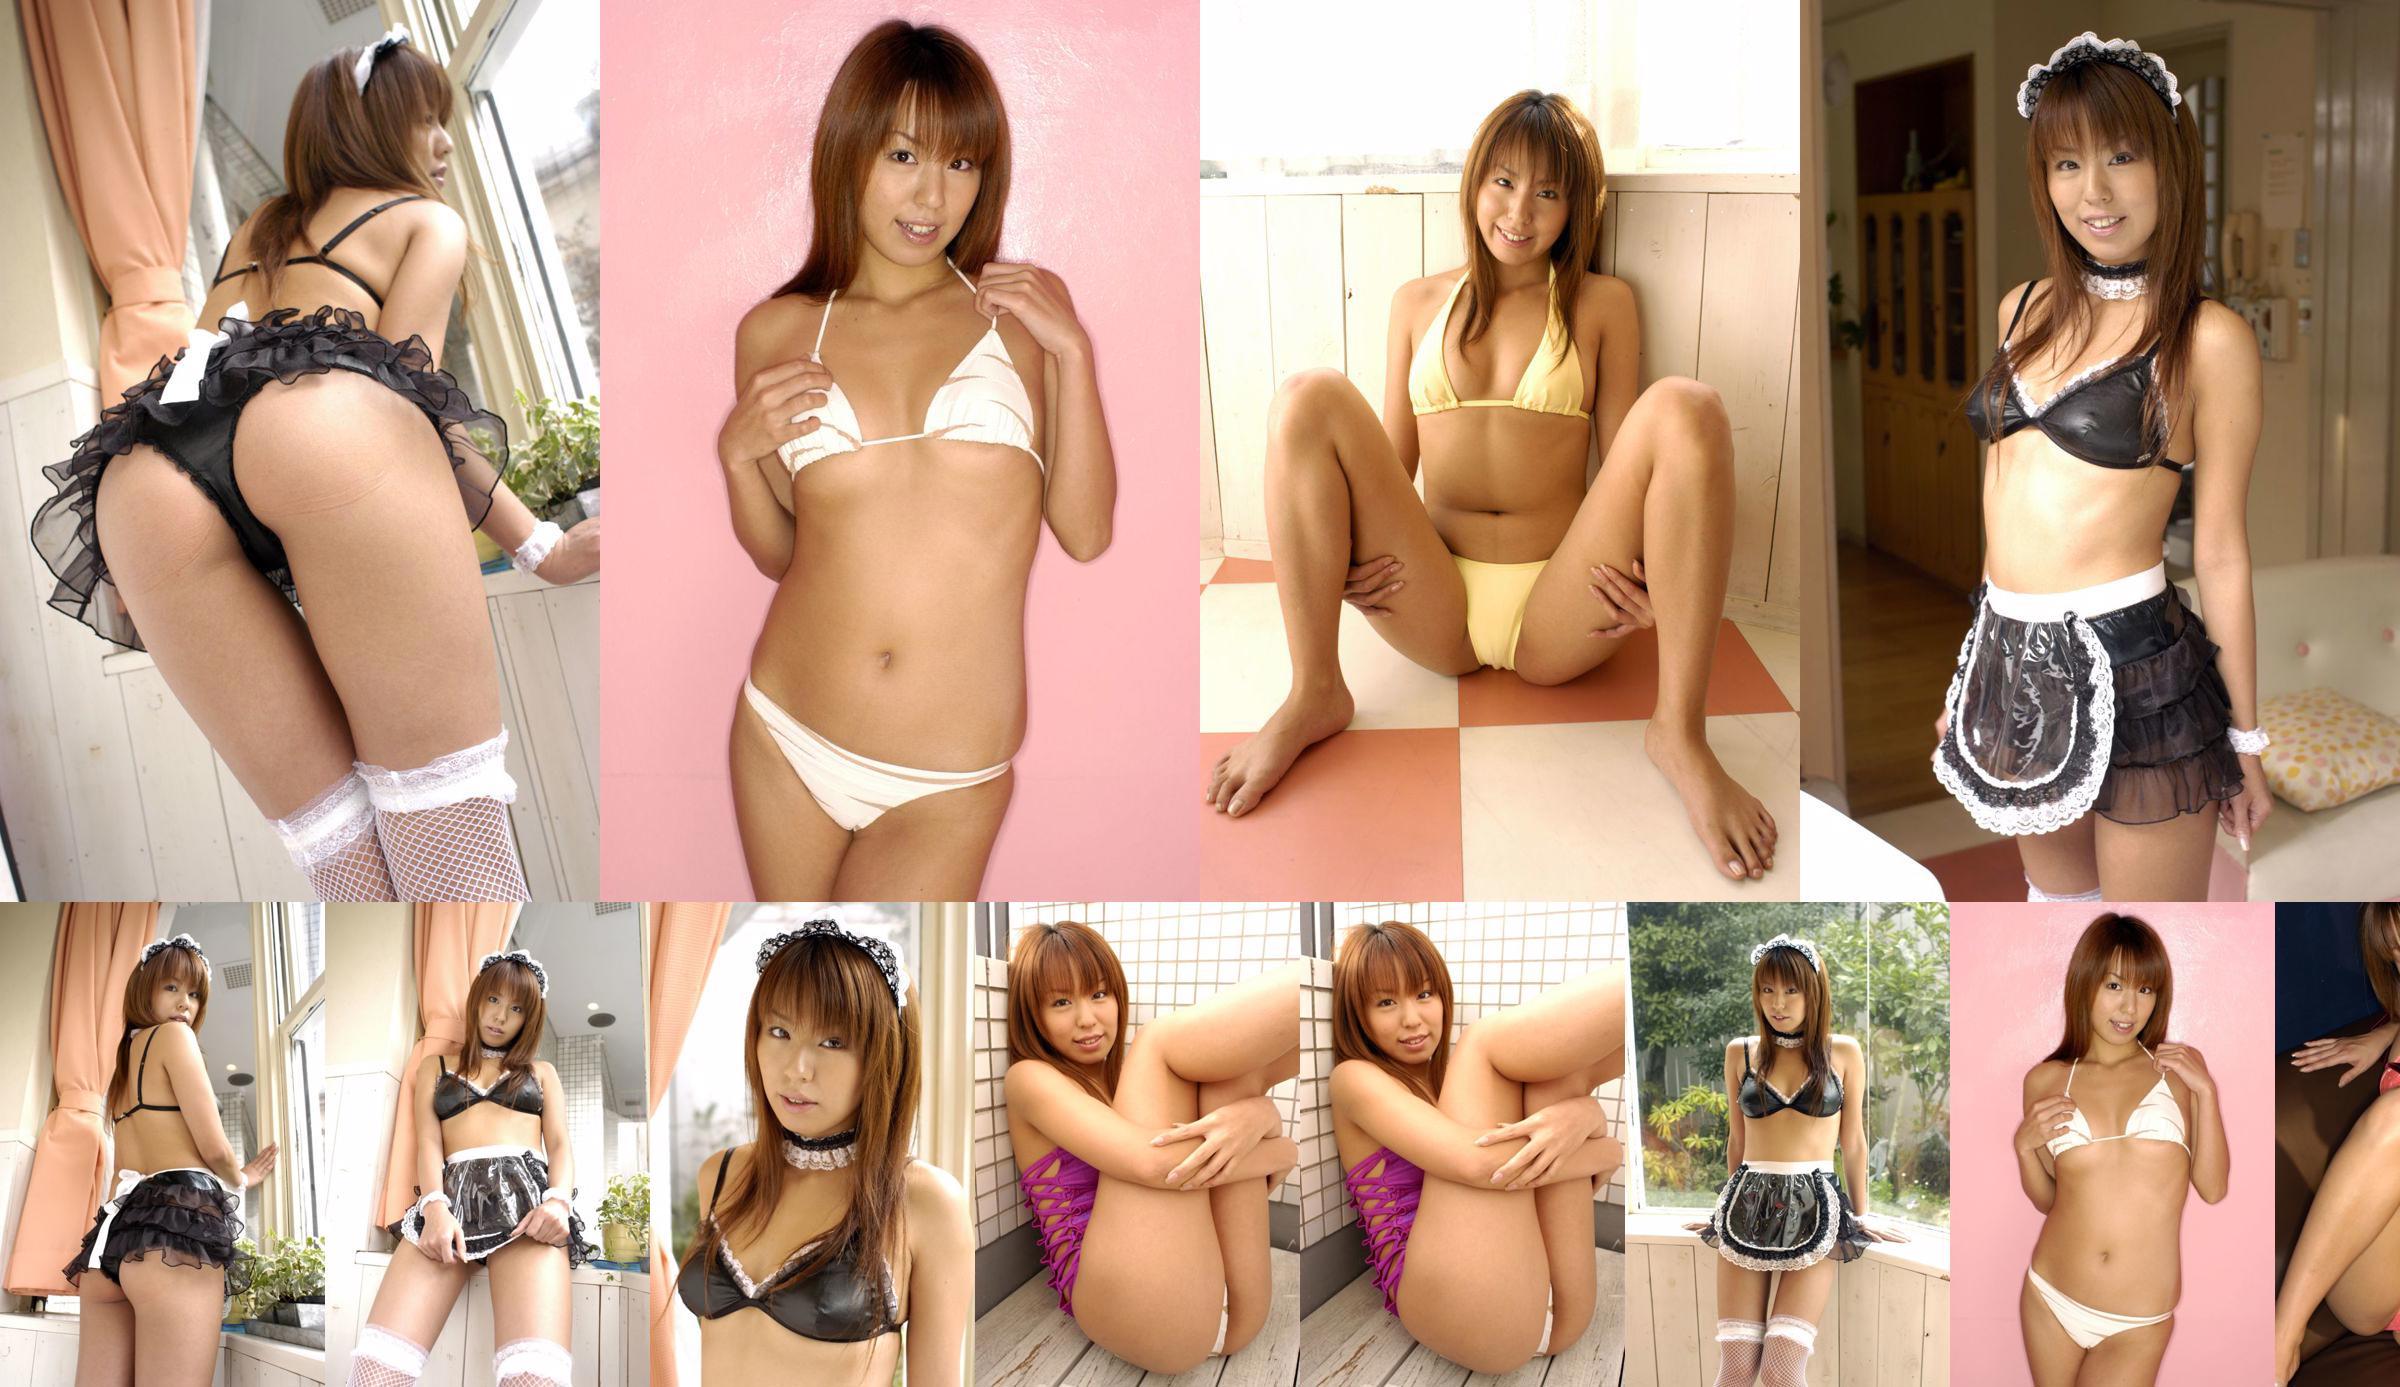 [LOVEPOP] 逢 沢 り い な Riina Aizawa Photoset 04 No.742dc5 Halaman 1